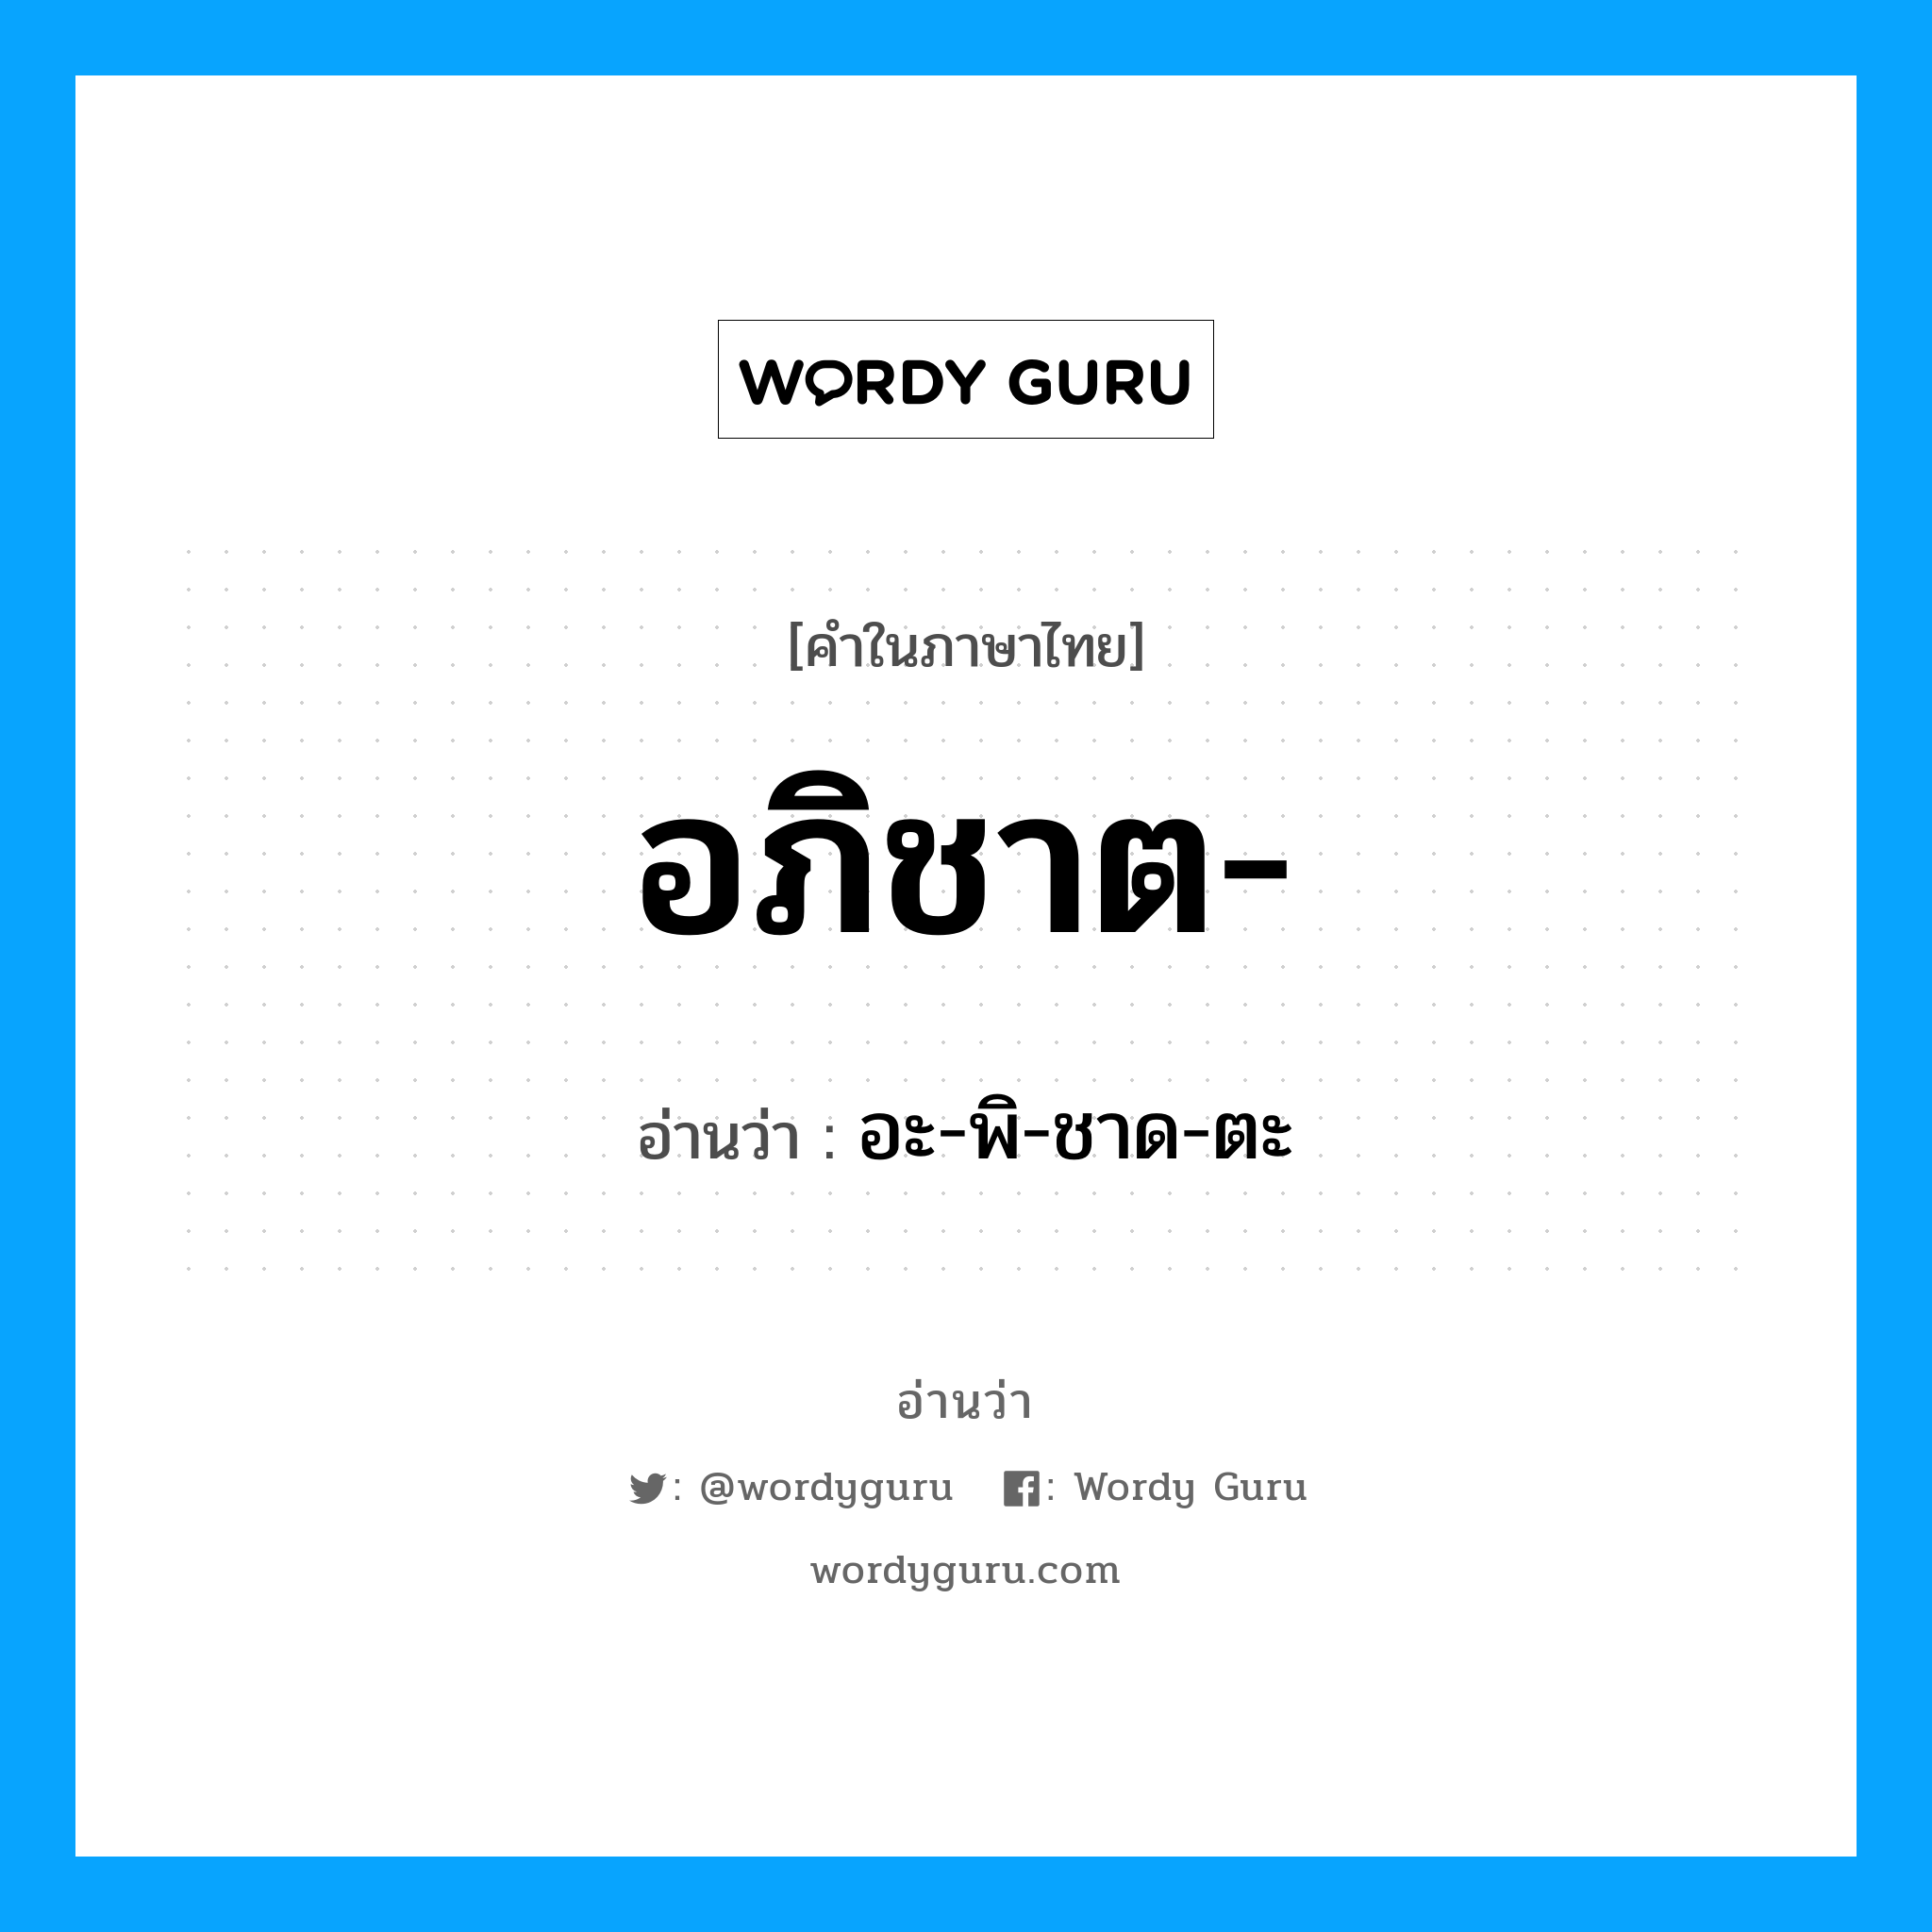 อะ-พิ-ชาด-ตะ เป็นคำอ่านของคำไหน?, คำในภาษาไทย อะ-พิ-ชาด-ตะ อ่านว่า อภิชาต-